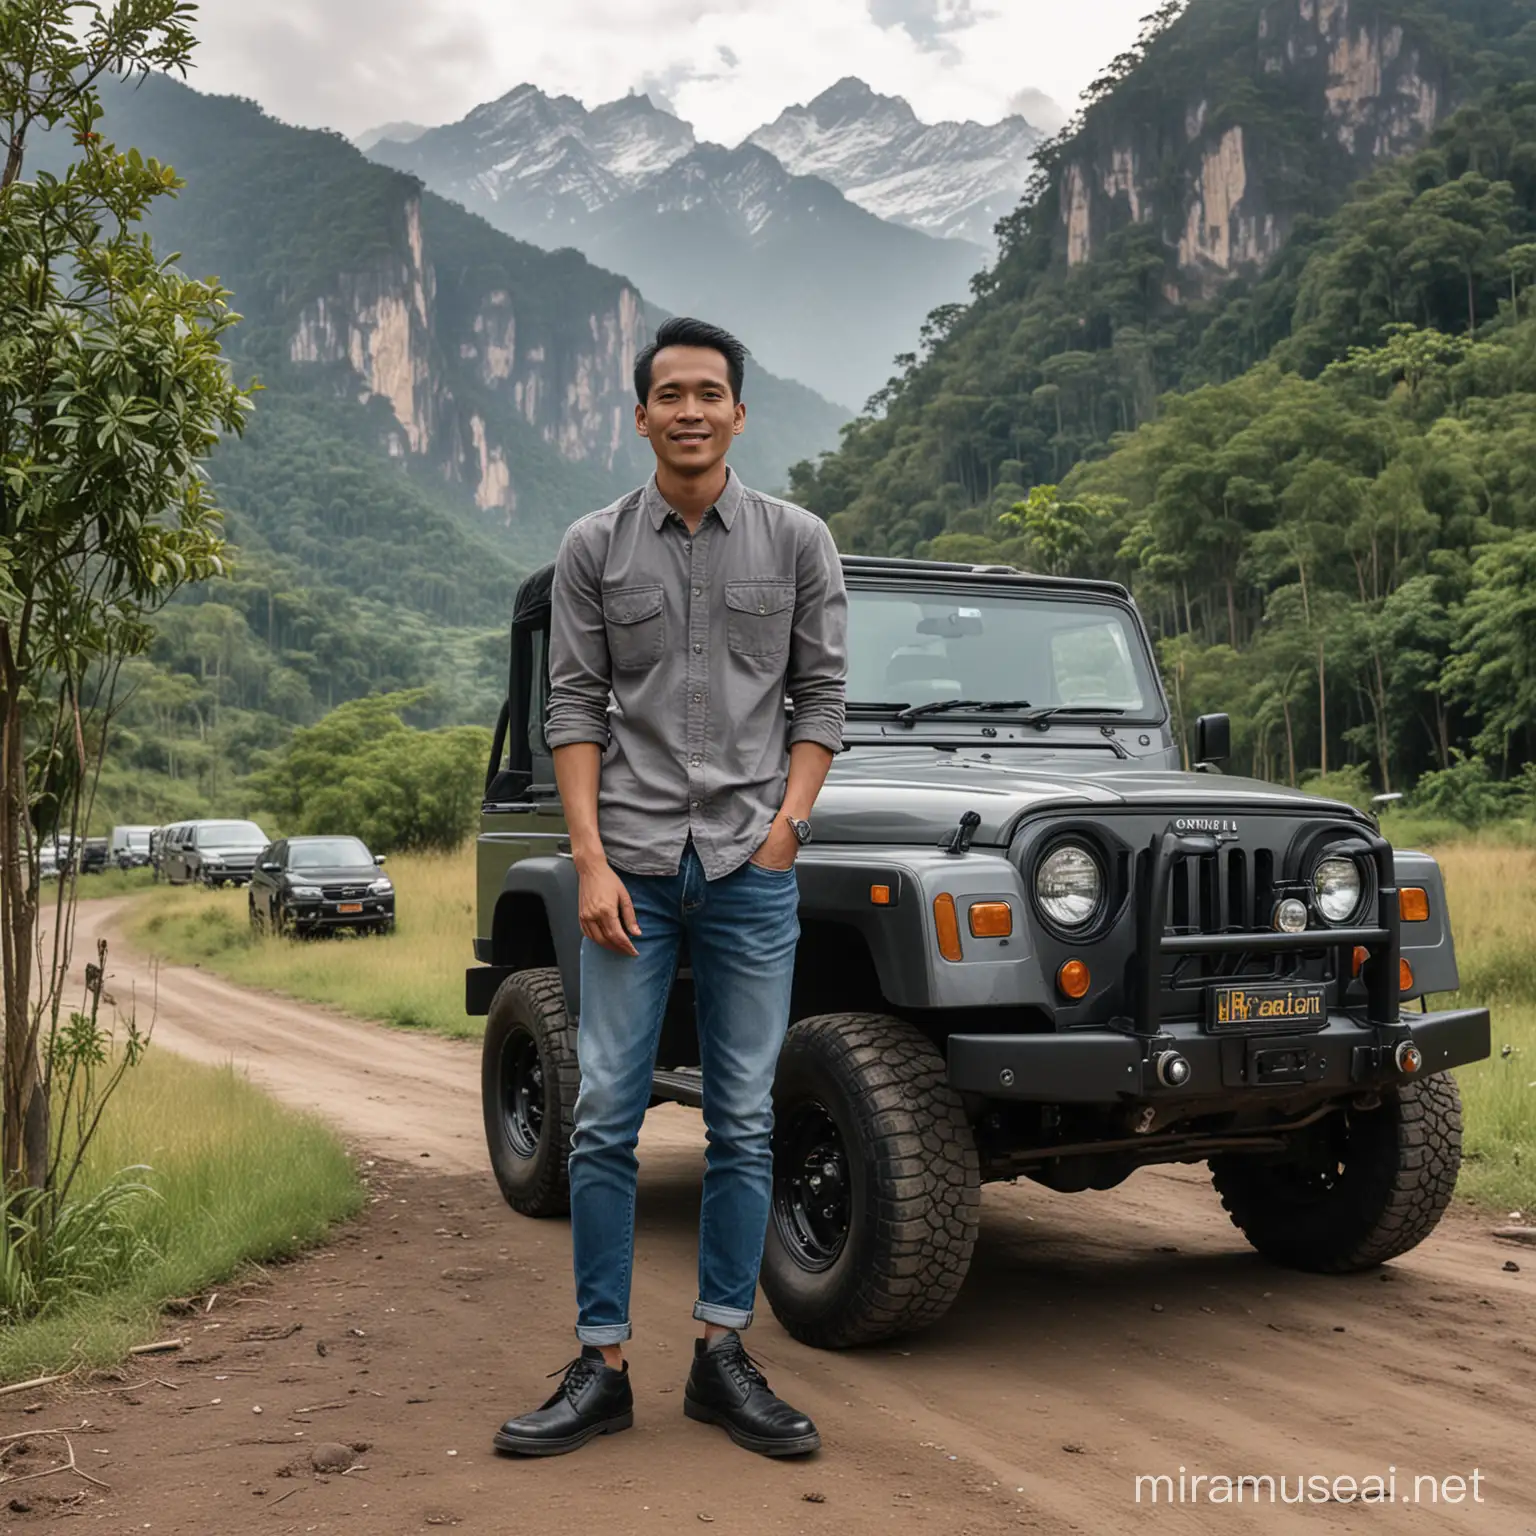 Foto pria indonesia,baju hem abu abu lengan baju digulung,celana jeans,sepatu kulit,berdiri dekat sebuah mobil jeep warna hitam,latar belakang pohon dan gunung